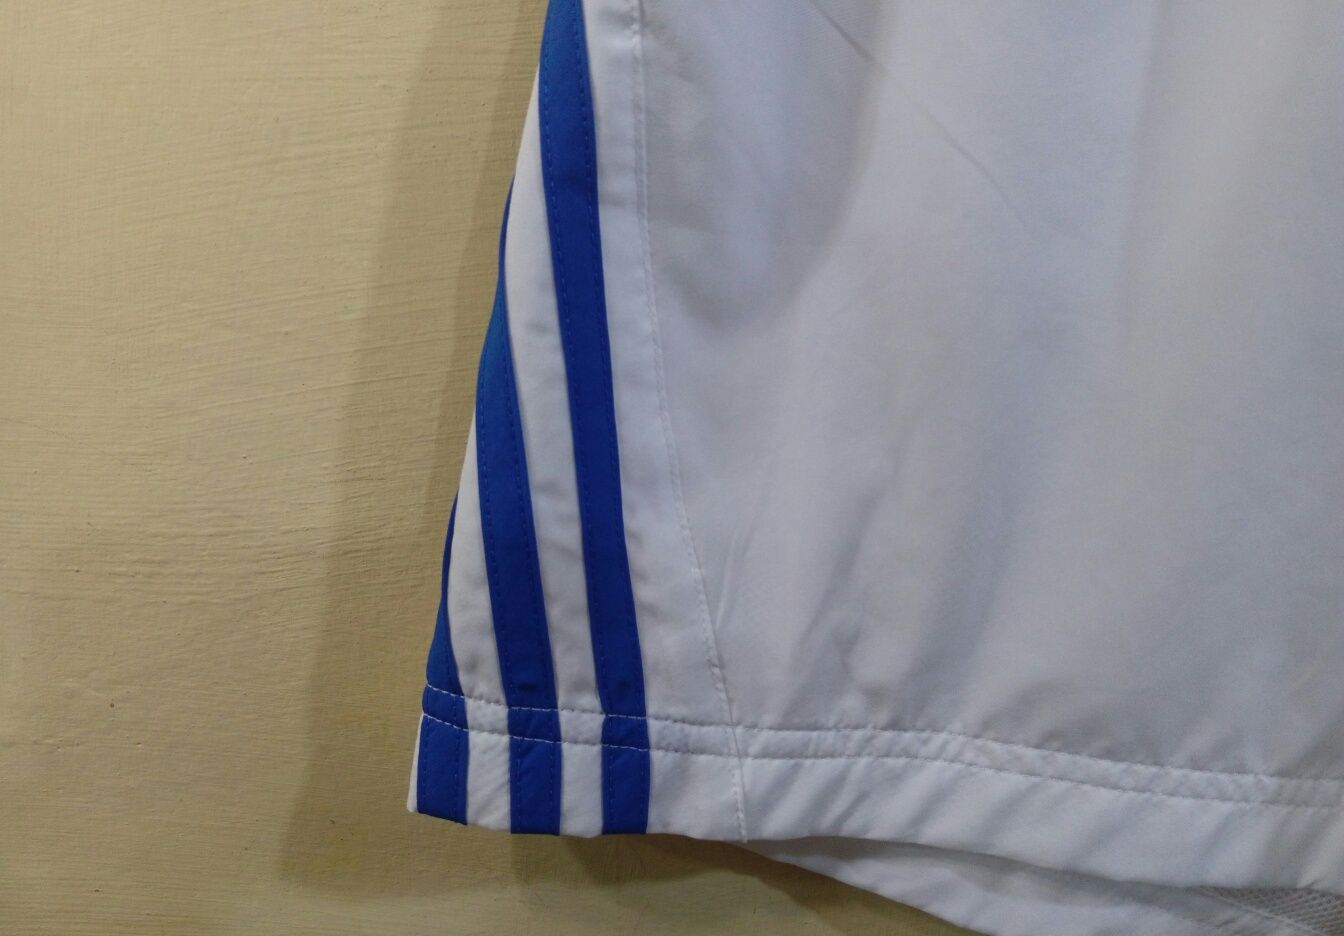 Оригинал легкие спортивные купальные шорты Adidas